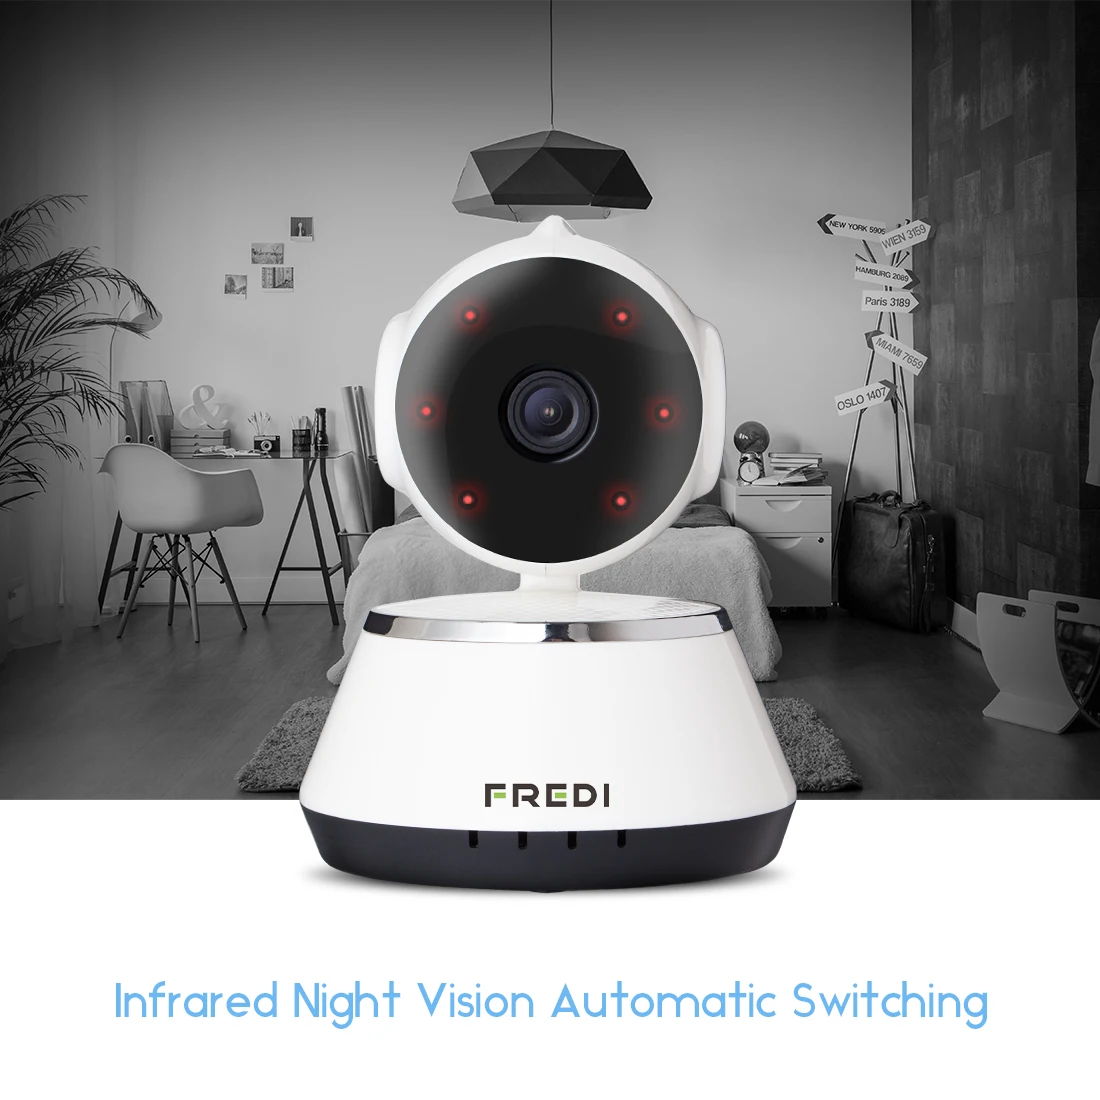 FREDI 1080 P/720 P домашняя IP камера безопасности двухсторонняя аудио беспроводная камера WiFi камера видеонаблюдения CCTV камера ночного видения